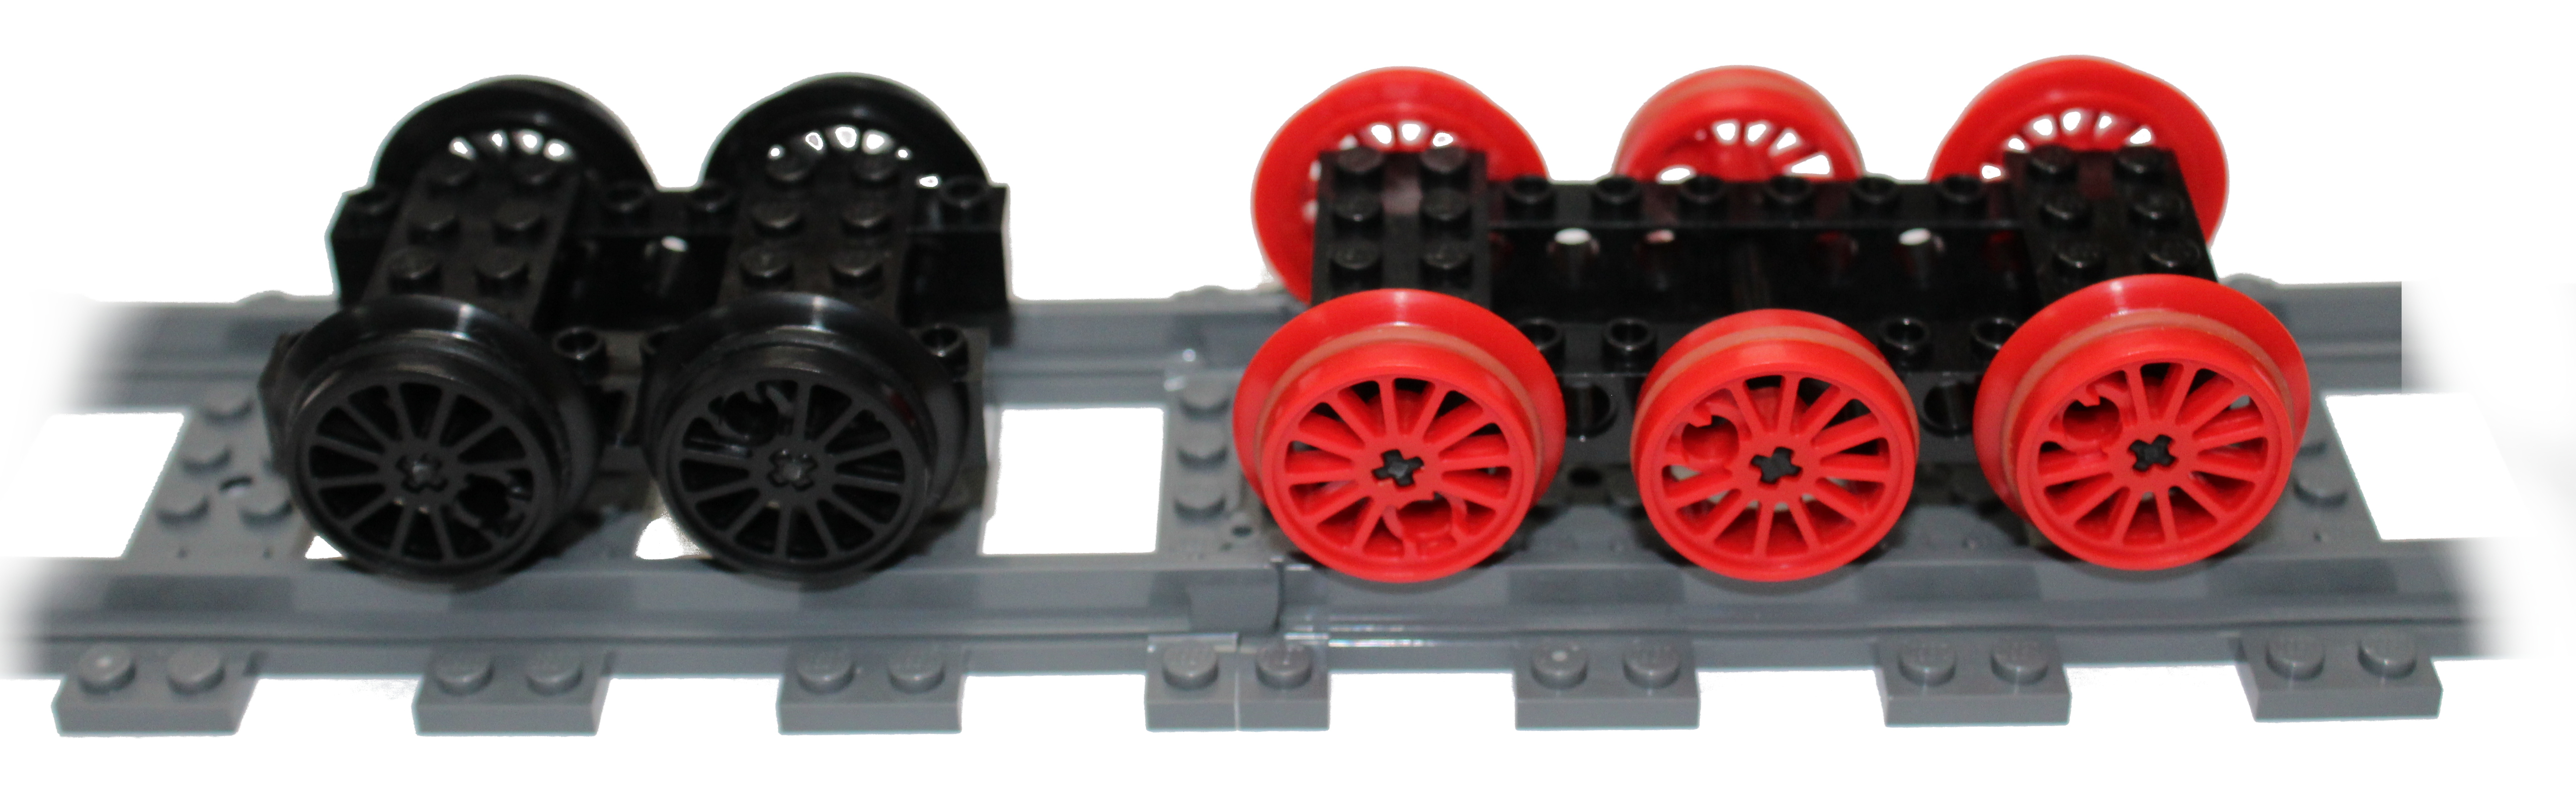 toy train wheels